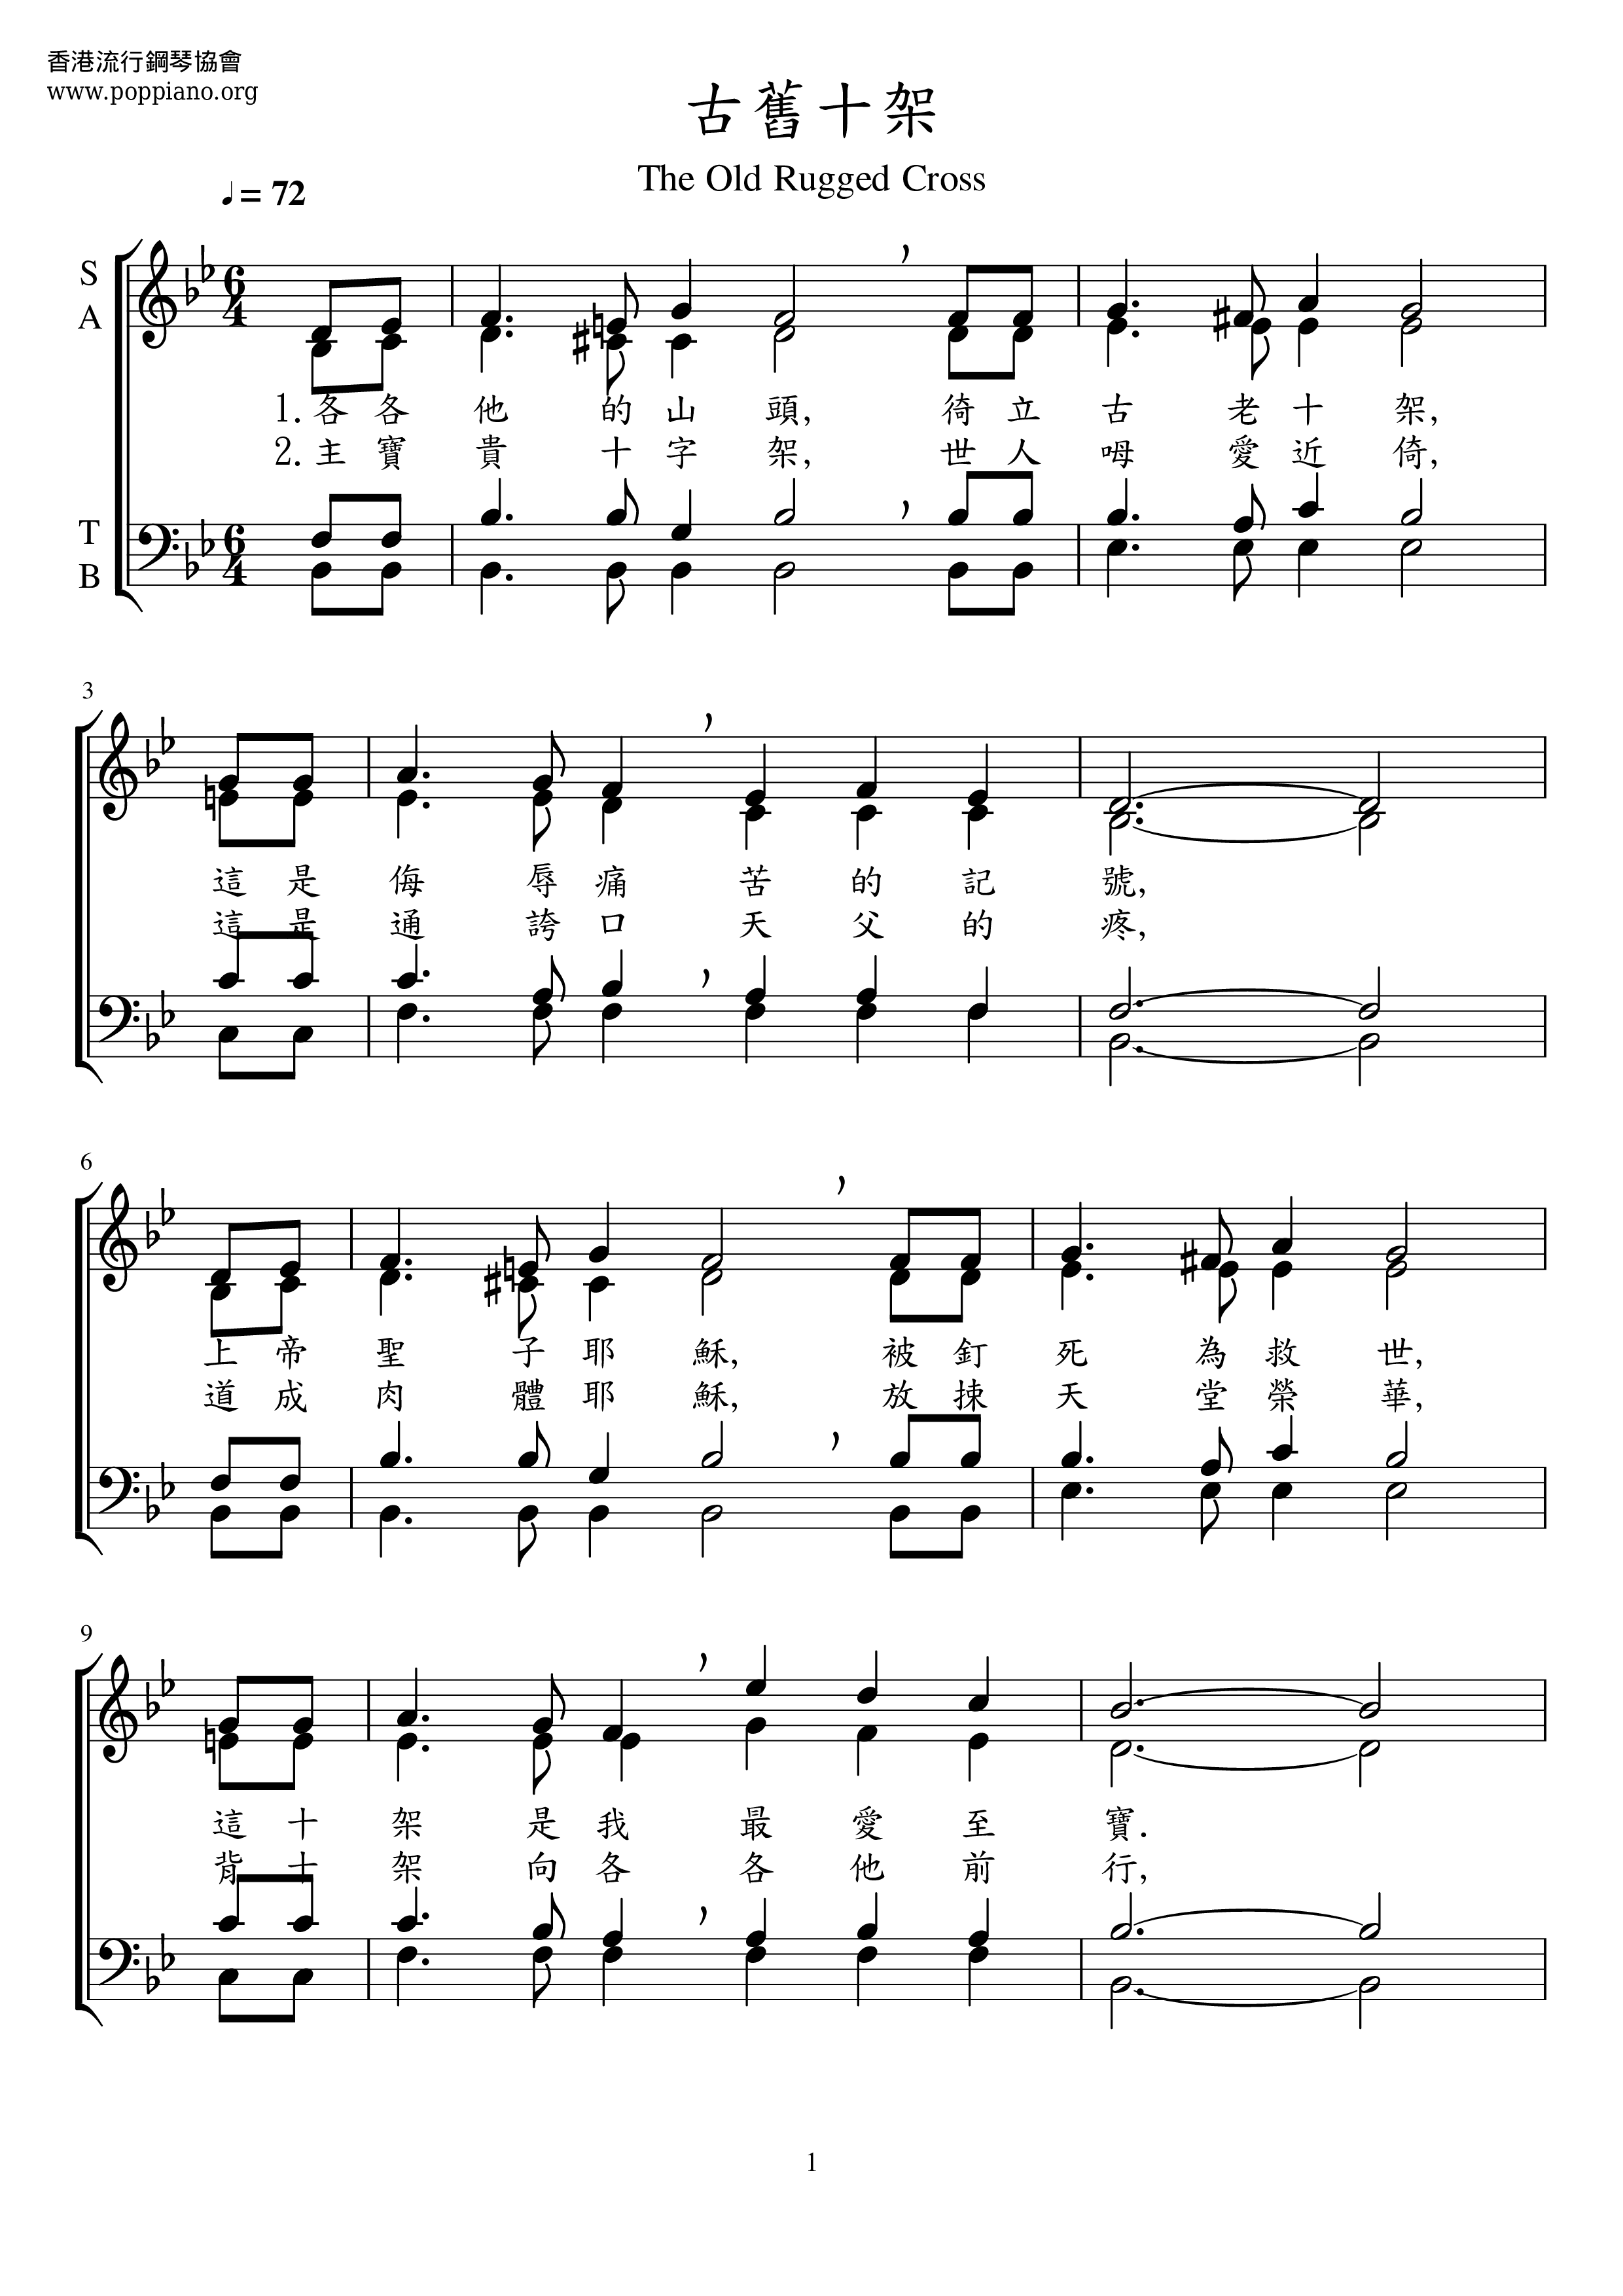 Old Cross Score